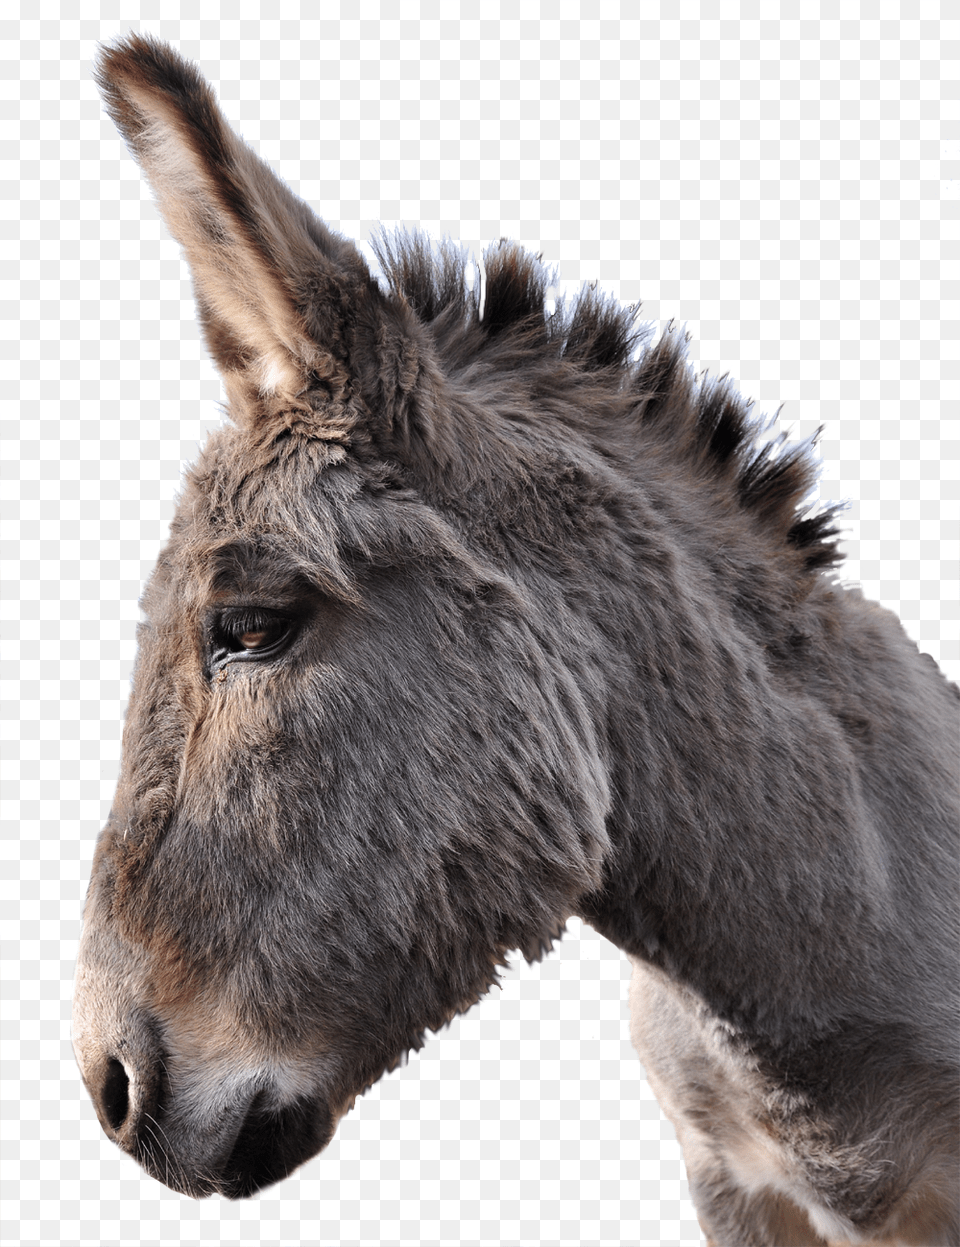 Donkey, Animal, Mammal, Horse Png Image